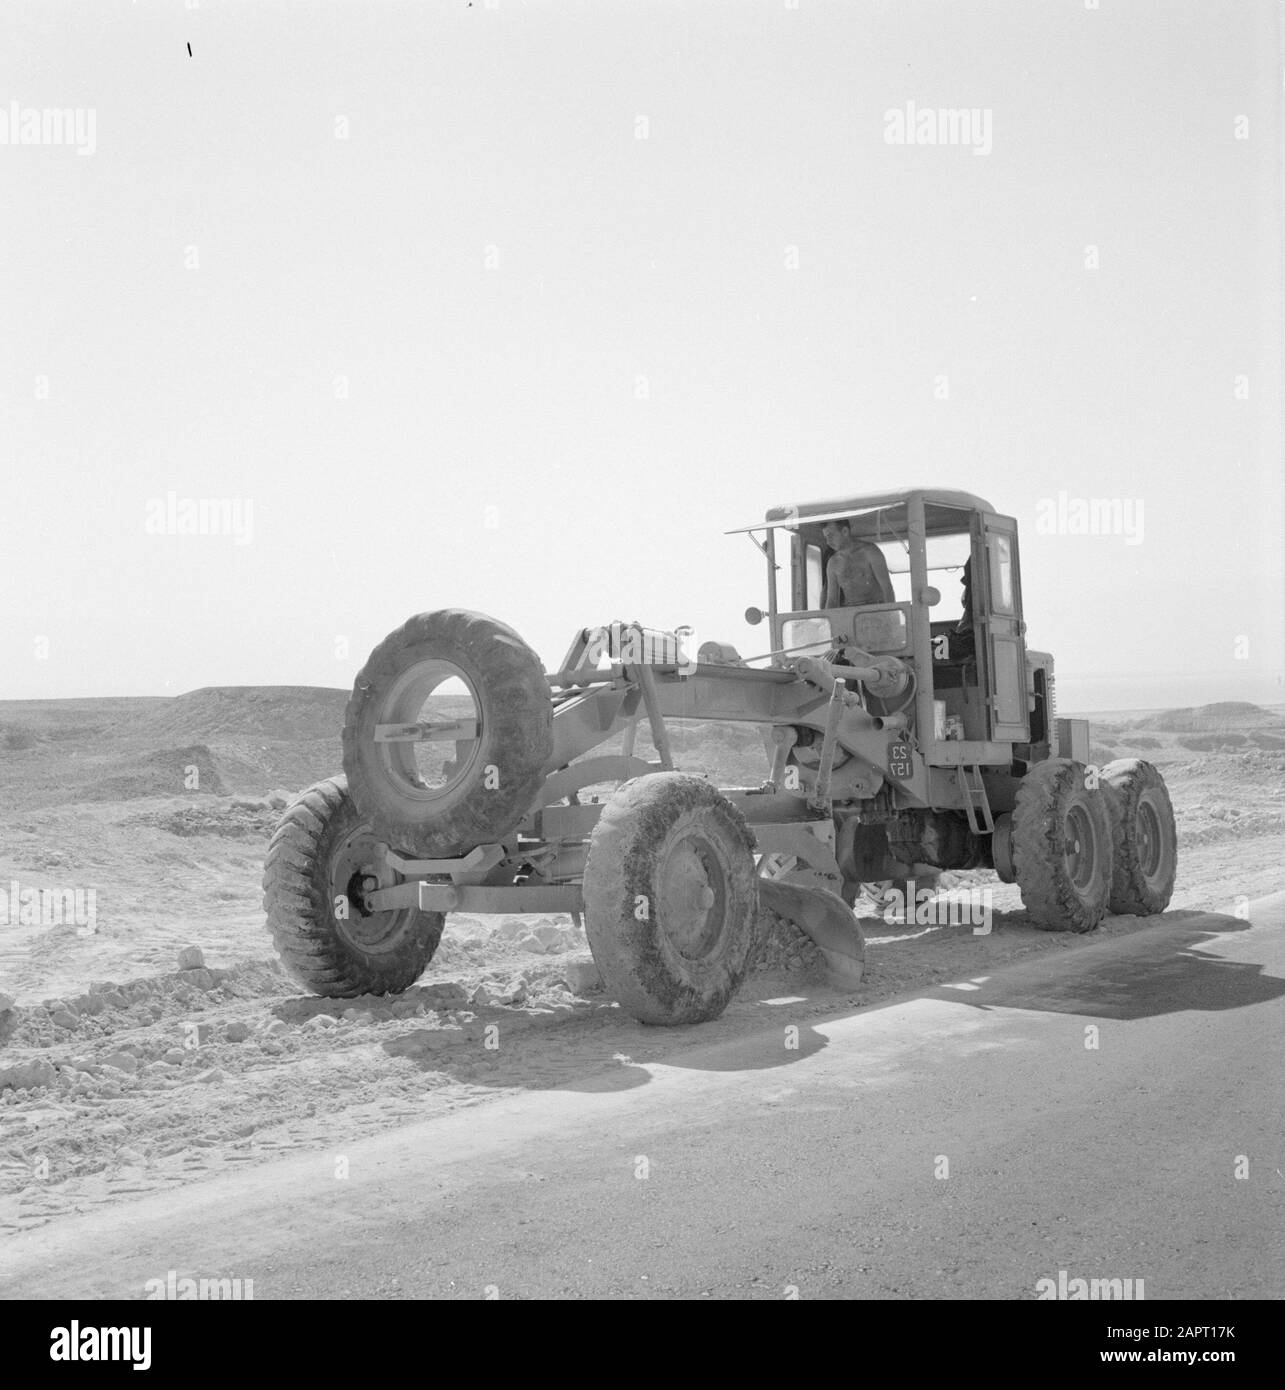 Israele 1964-1965: Area del Mar Morto un trattore muove sabbia per la costruzione di una strada. Date: 1964 Location: Dead Sea, Israel Keywords: Trattori Foto Stock